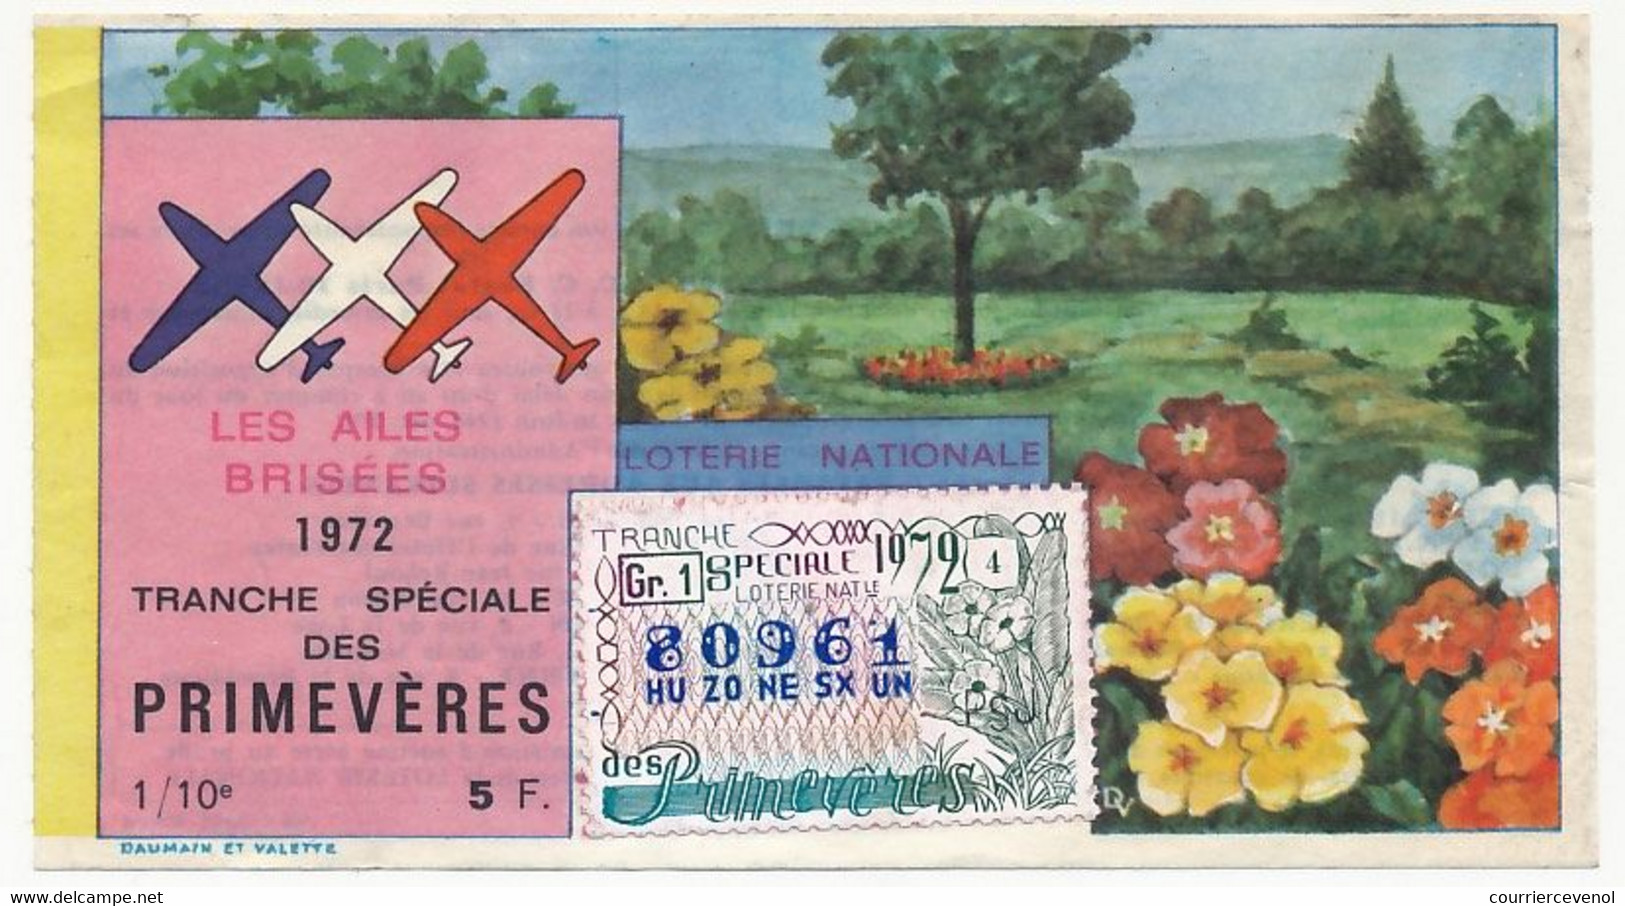 FRANCE - Loterie Nationale - 1/10ème - Les Ailes Brisées - Tranche Spéciale Des Primevères - 1972 - Lottery Tickets